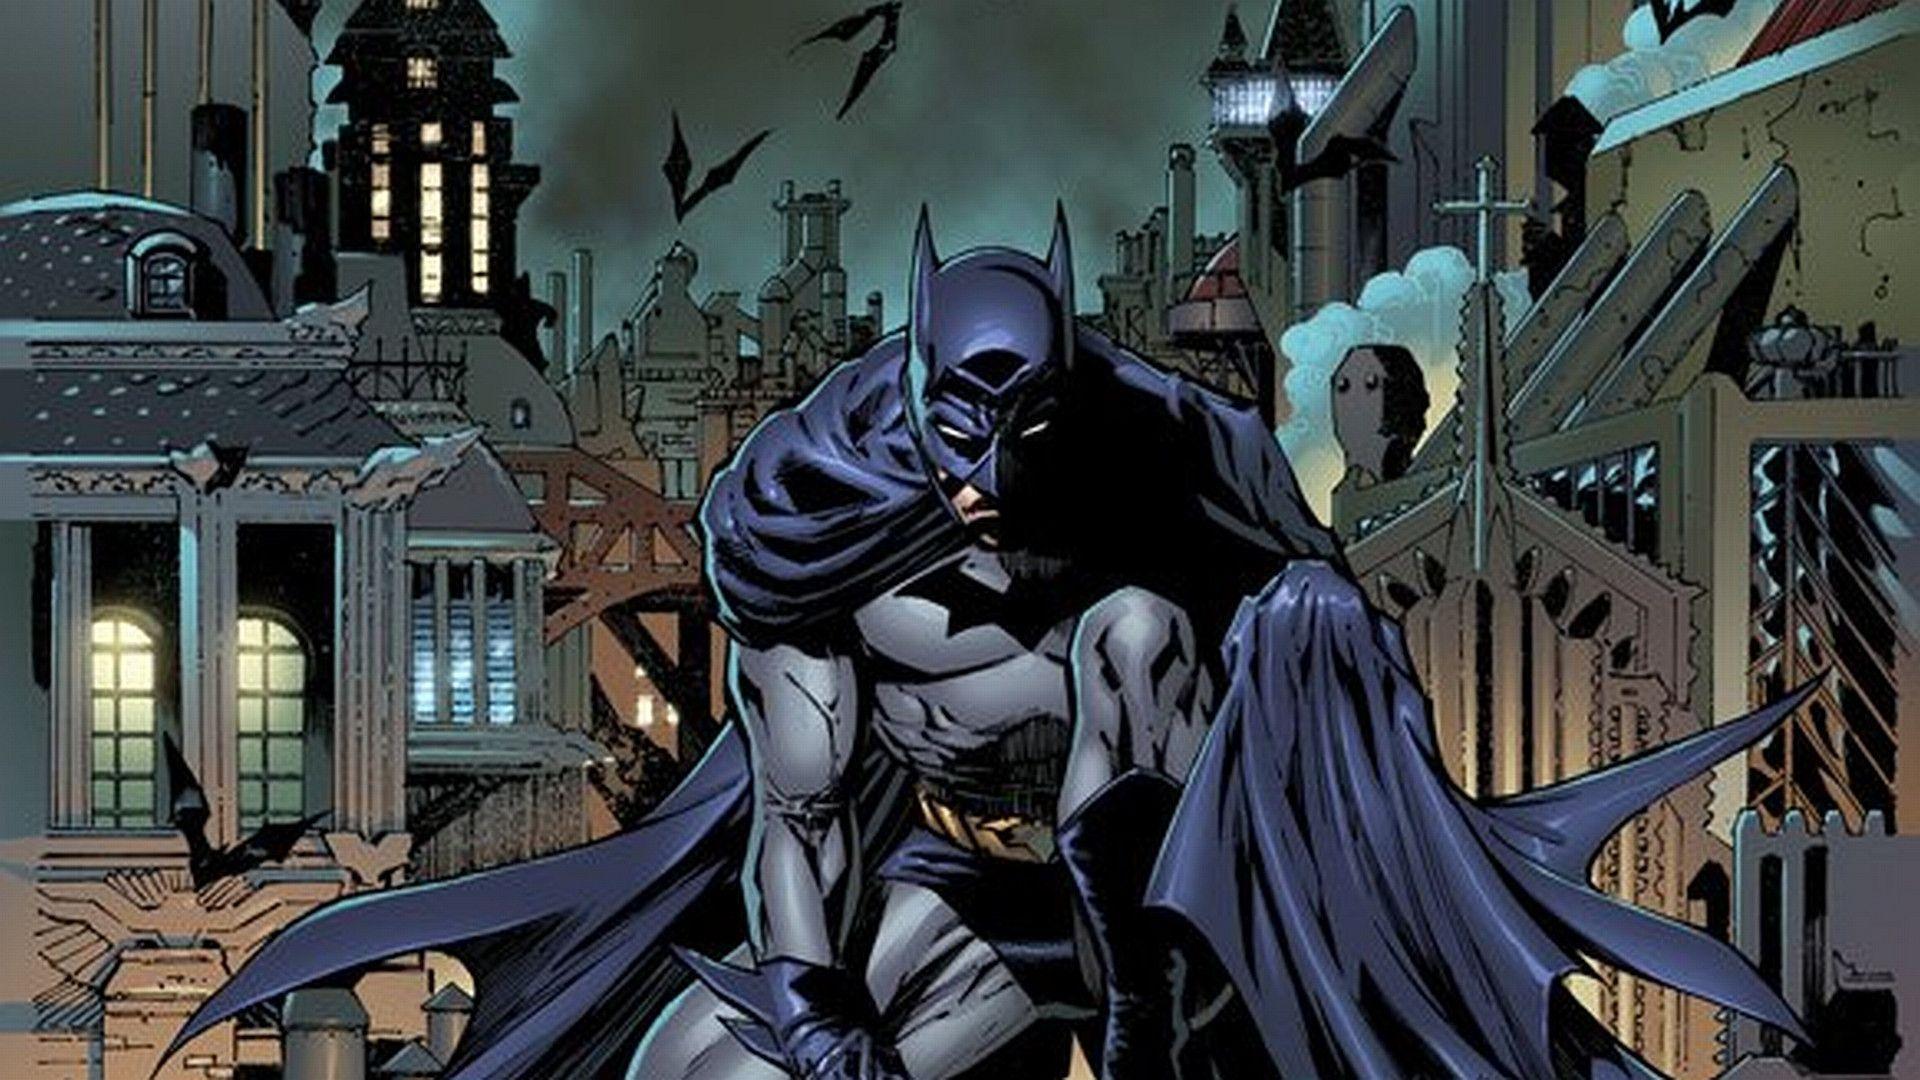 Wallpaper Background: Batman Wallpaper Are Bat Tastic!